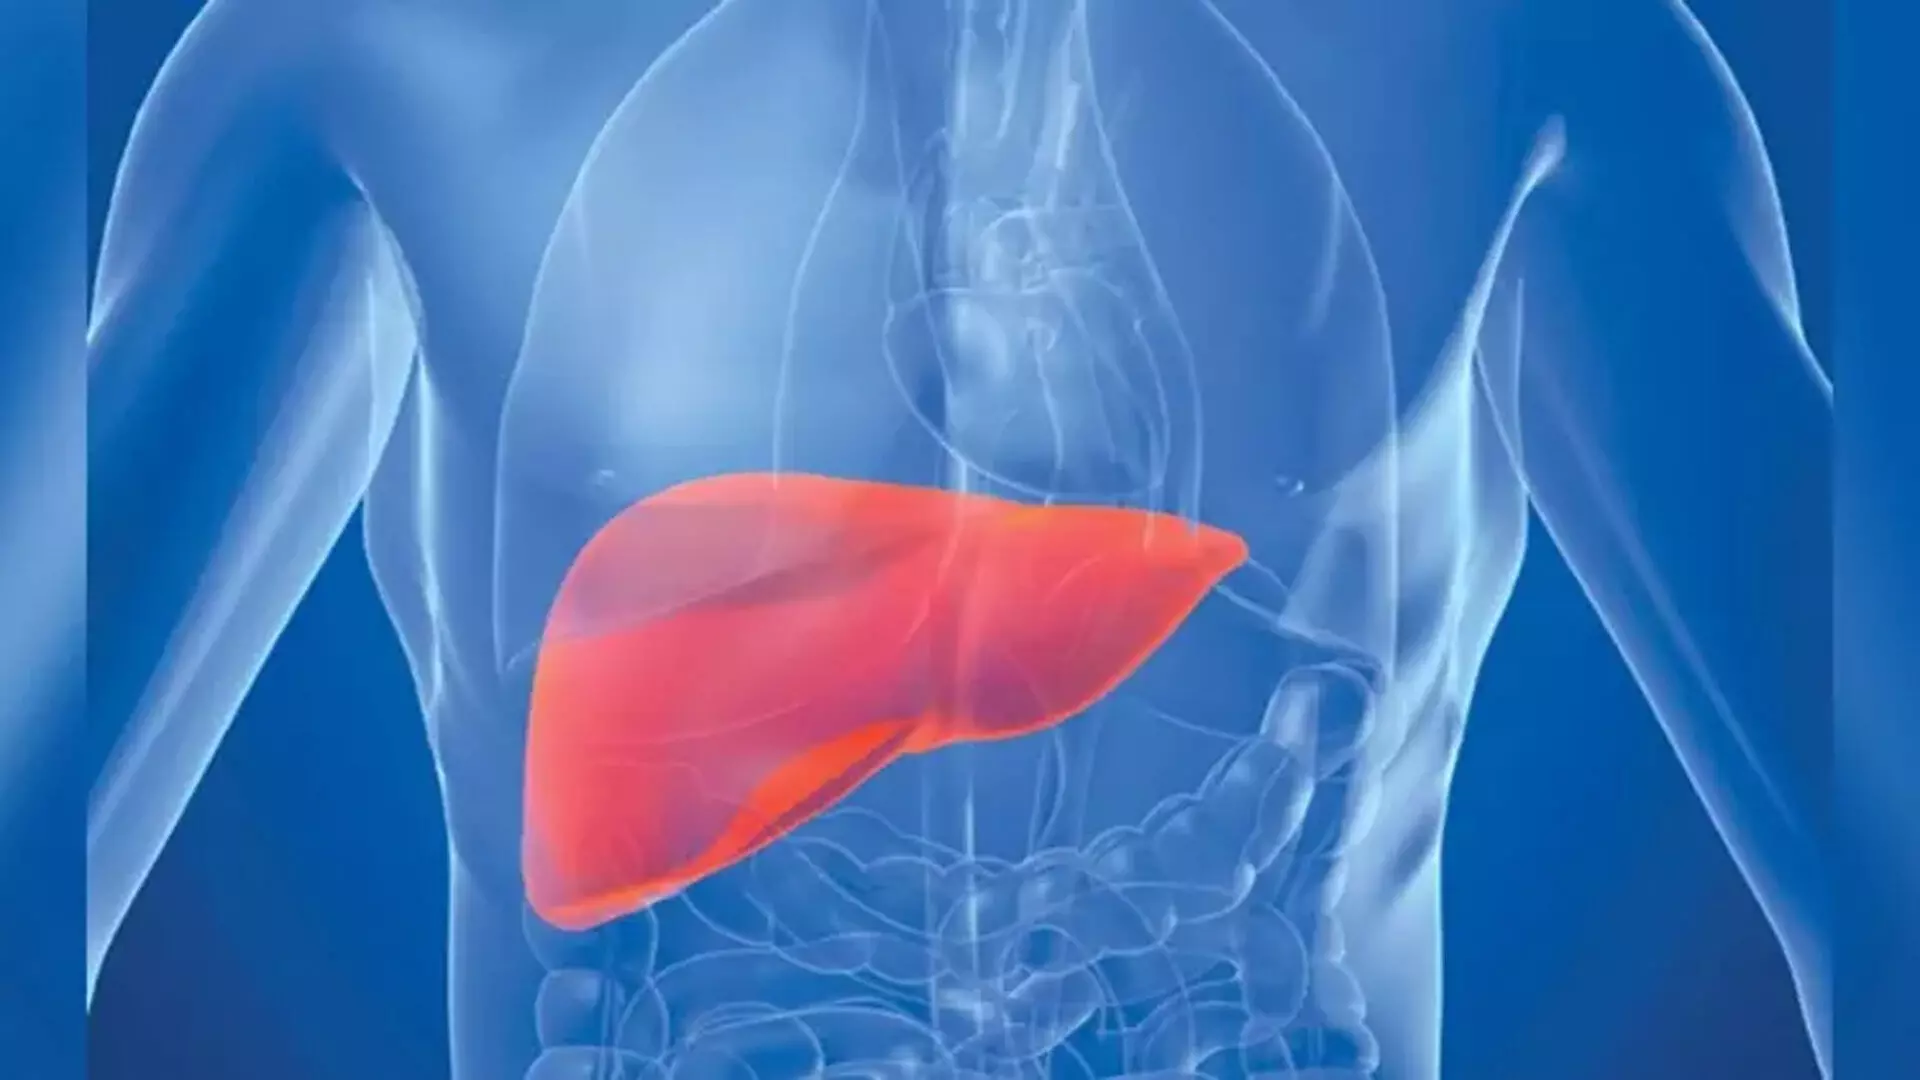 वायरल hepatitis क्या है और यह लोगों को कैसे करता है प्रभावित?